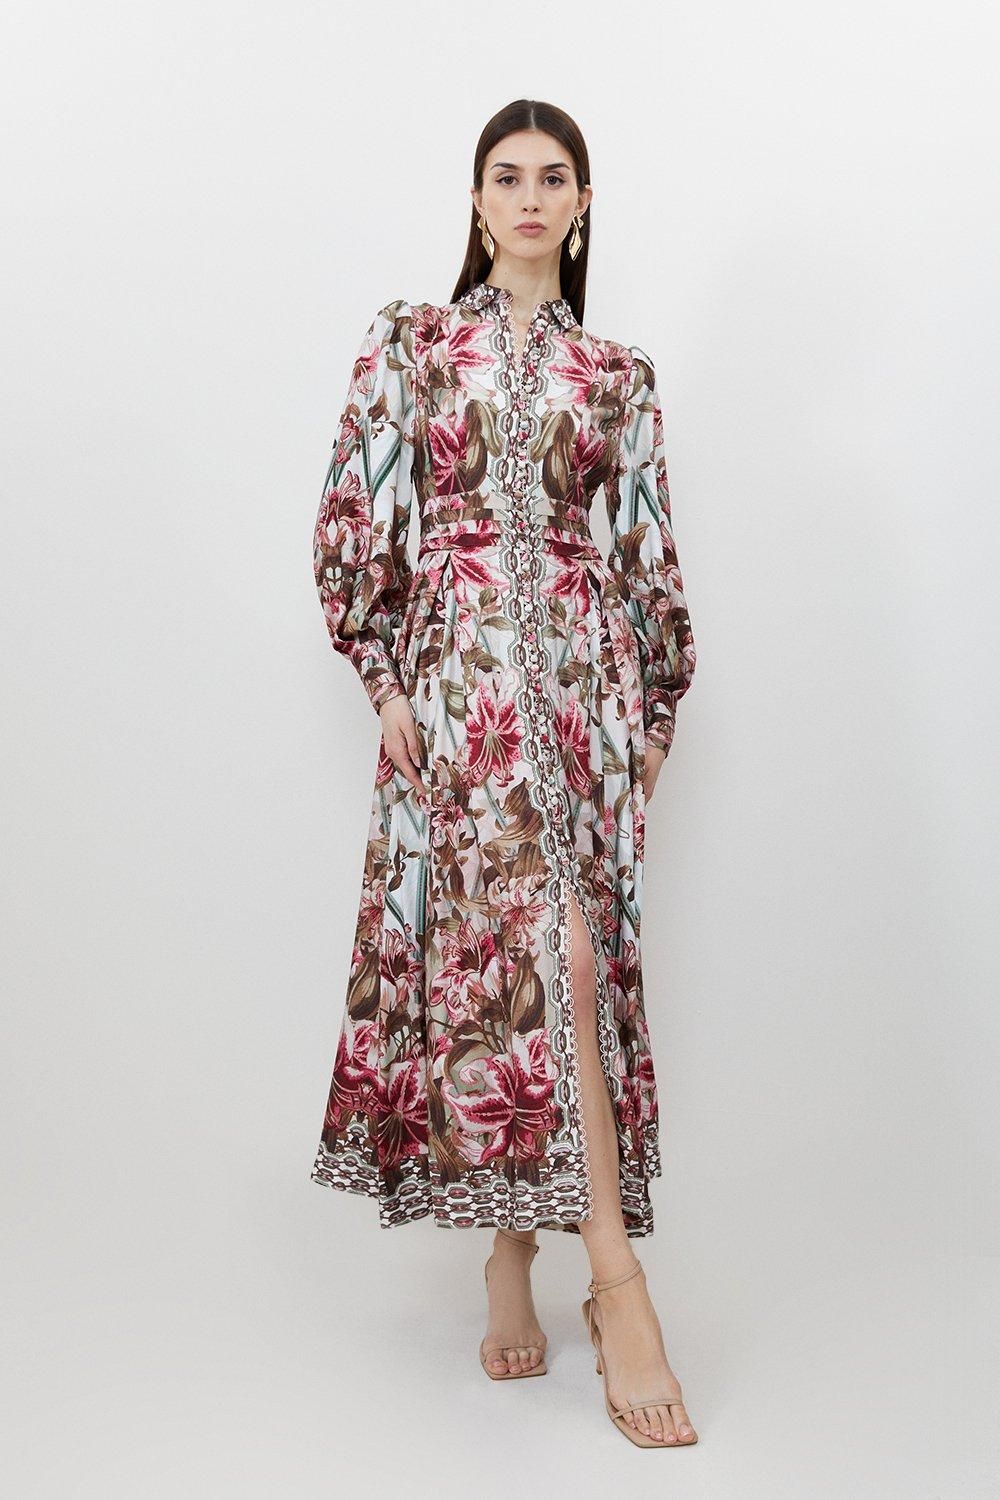 Linen Viscose Border Print Floral Woven Maxi Dress | Karen Millen US